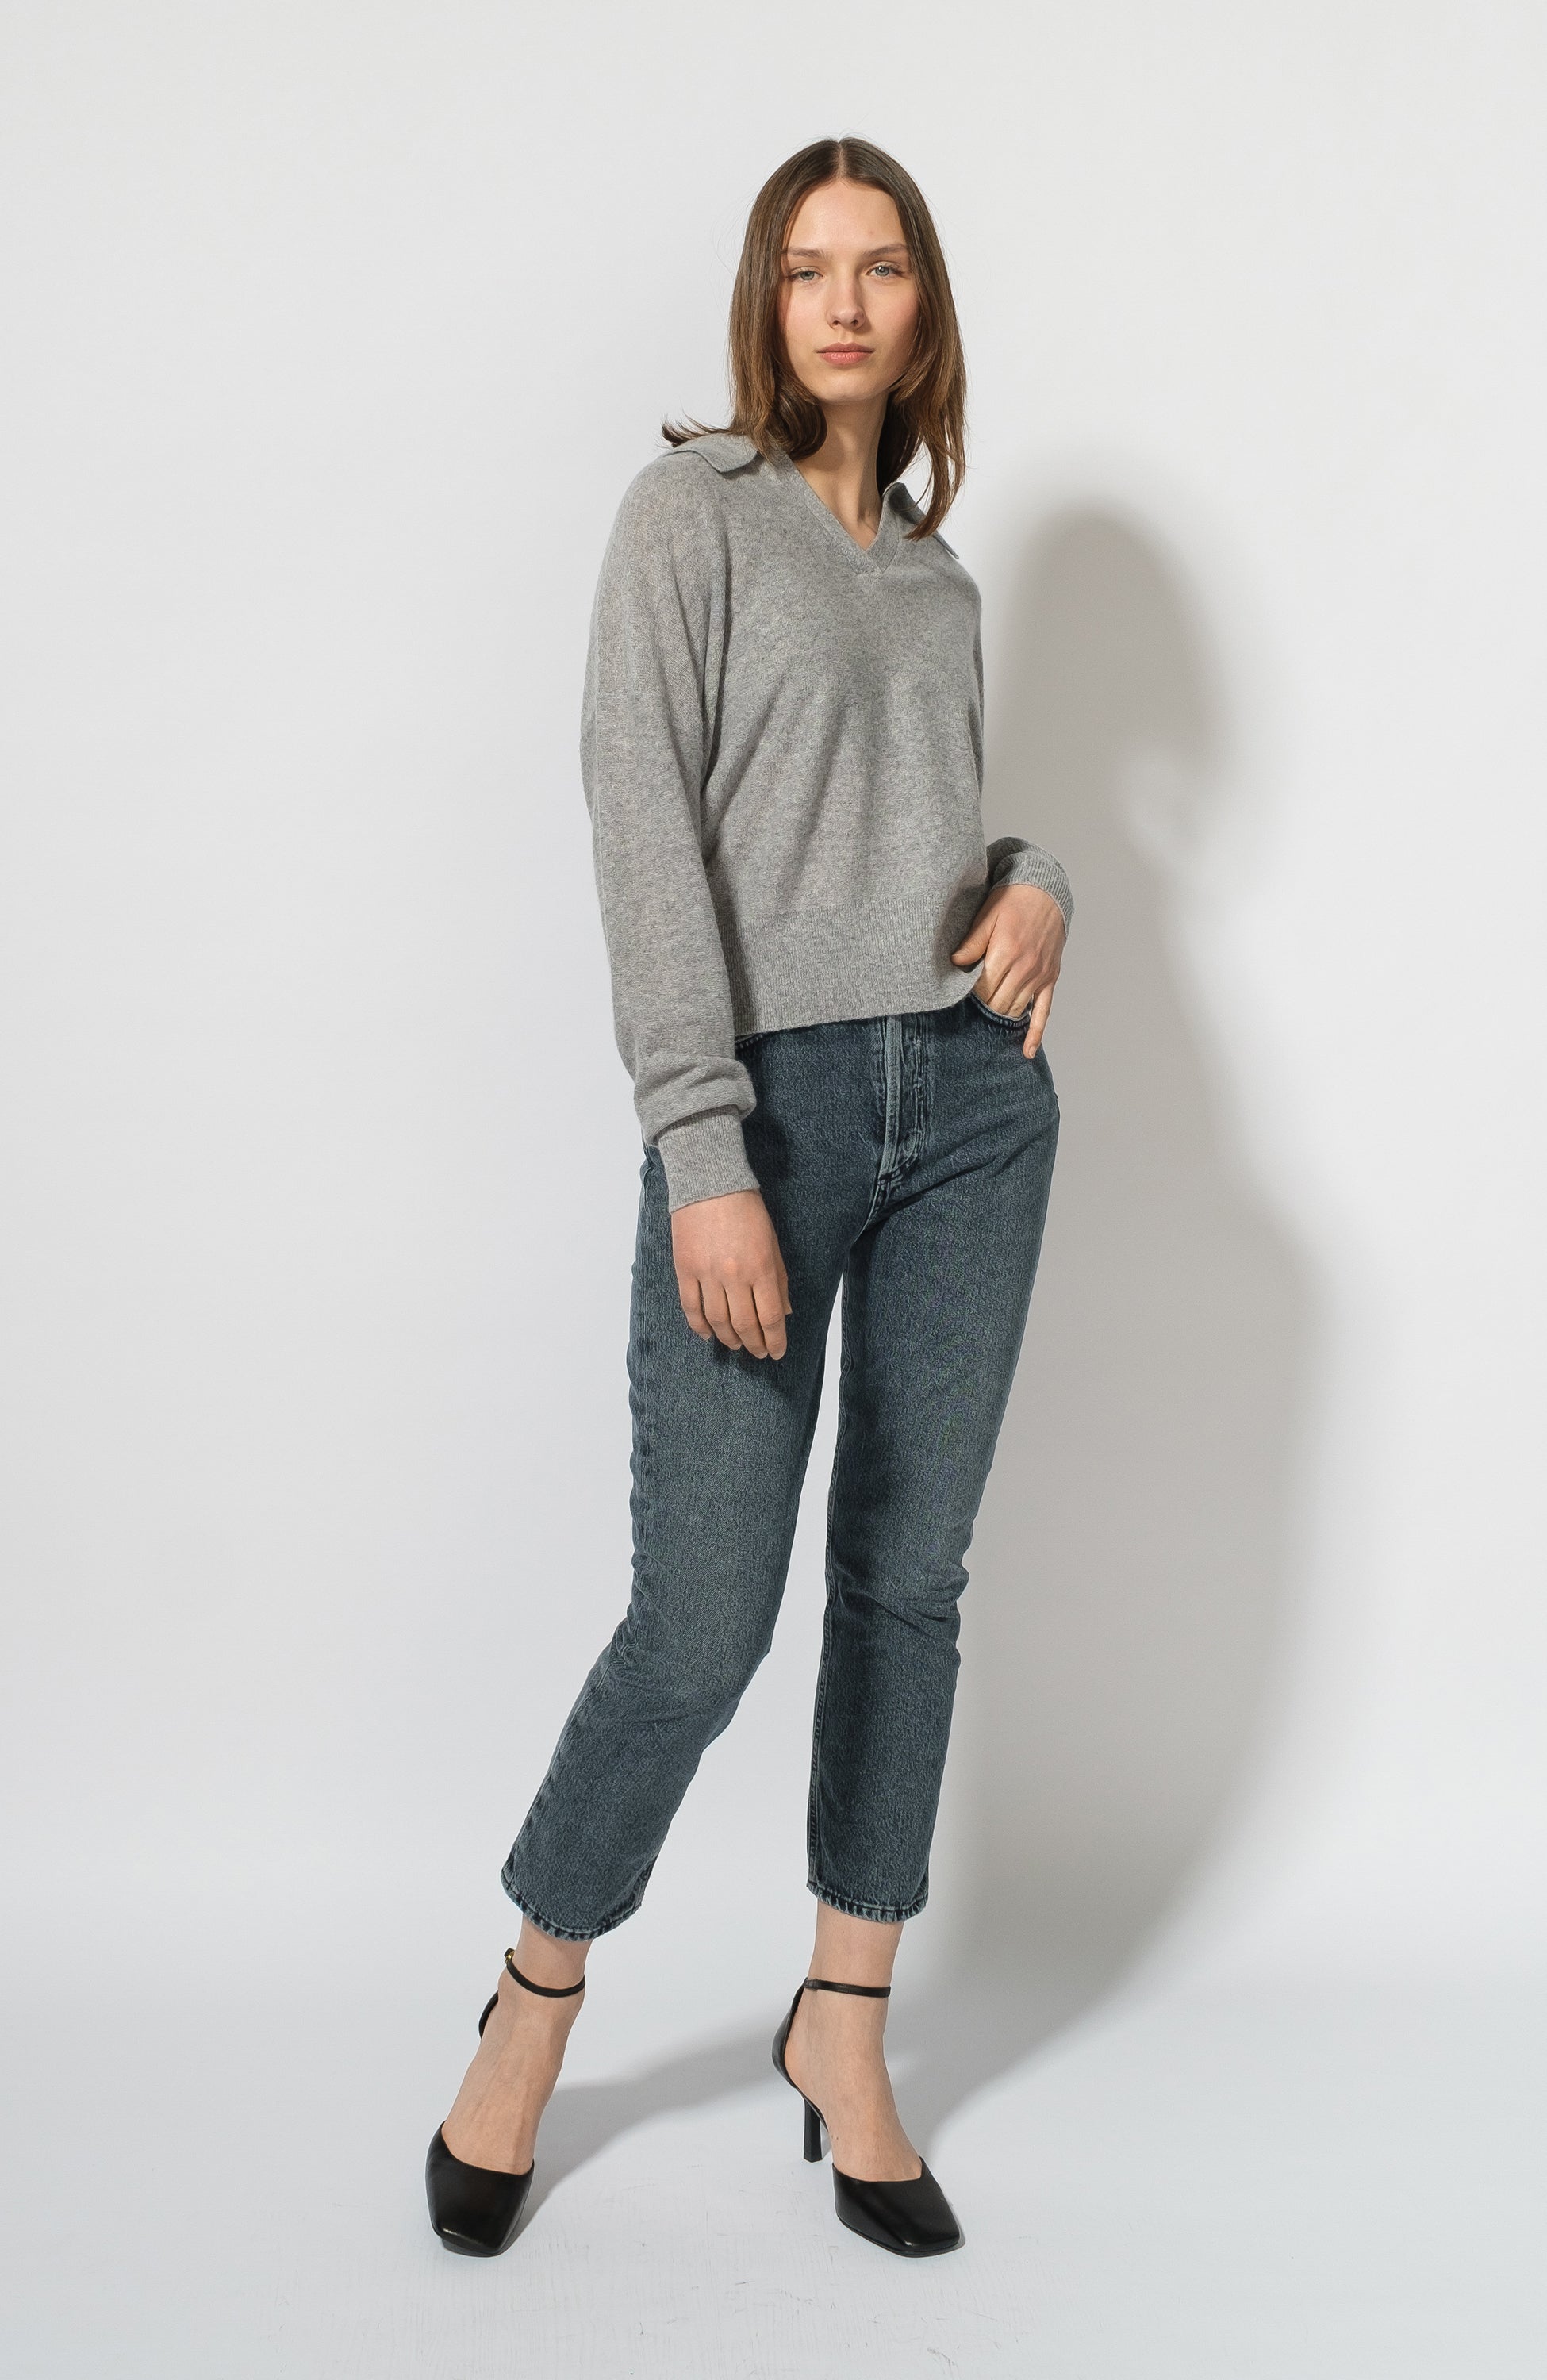 M2F Brand Denims Womens Cotton Mid Rise Zip Up Jeans Capris Beige